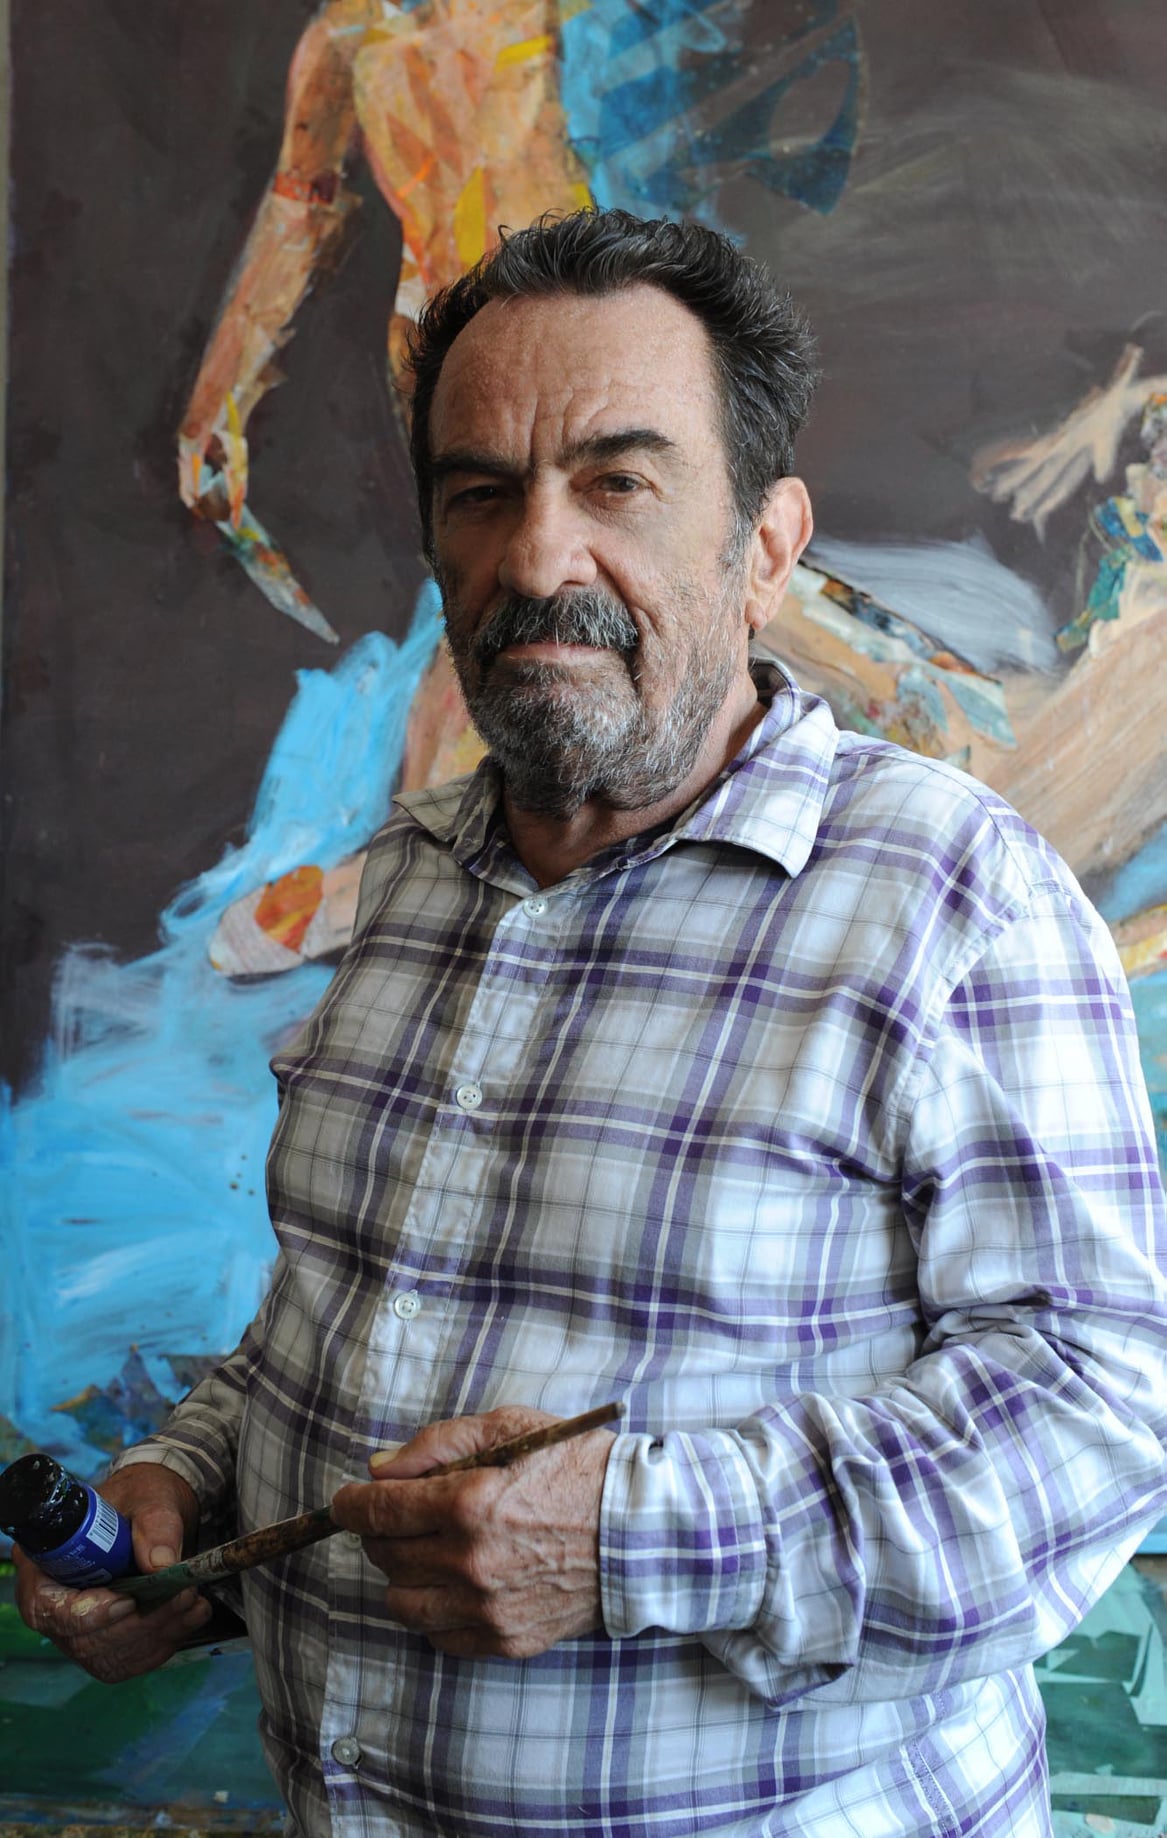 Obra del Artista Fallecido Rafael Colón Morales Forma Parte de la Colección Permanente en el Museo de Arte de Bayamón